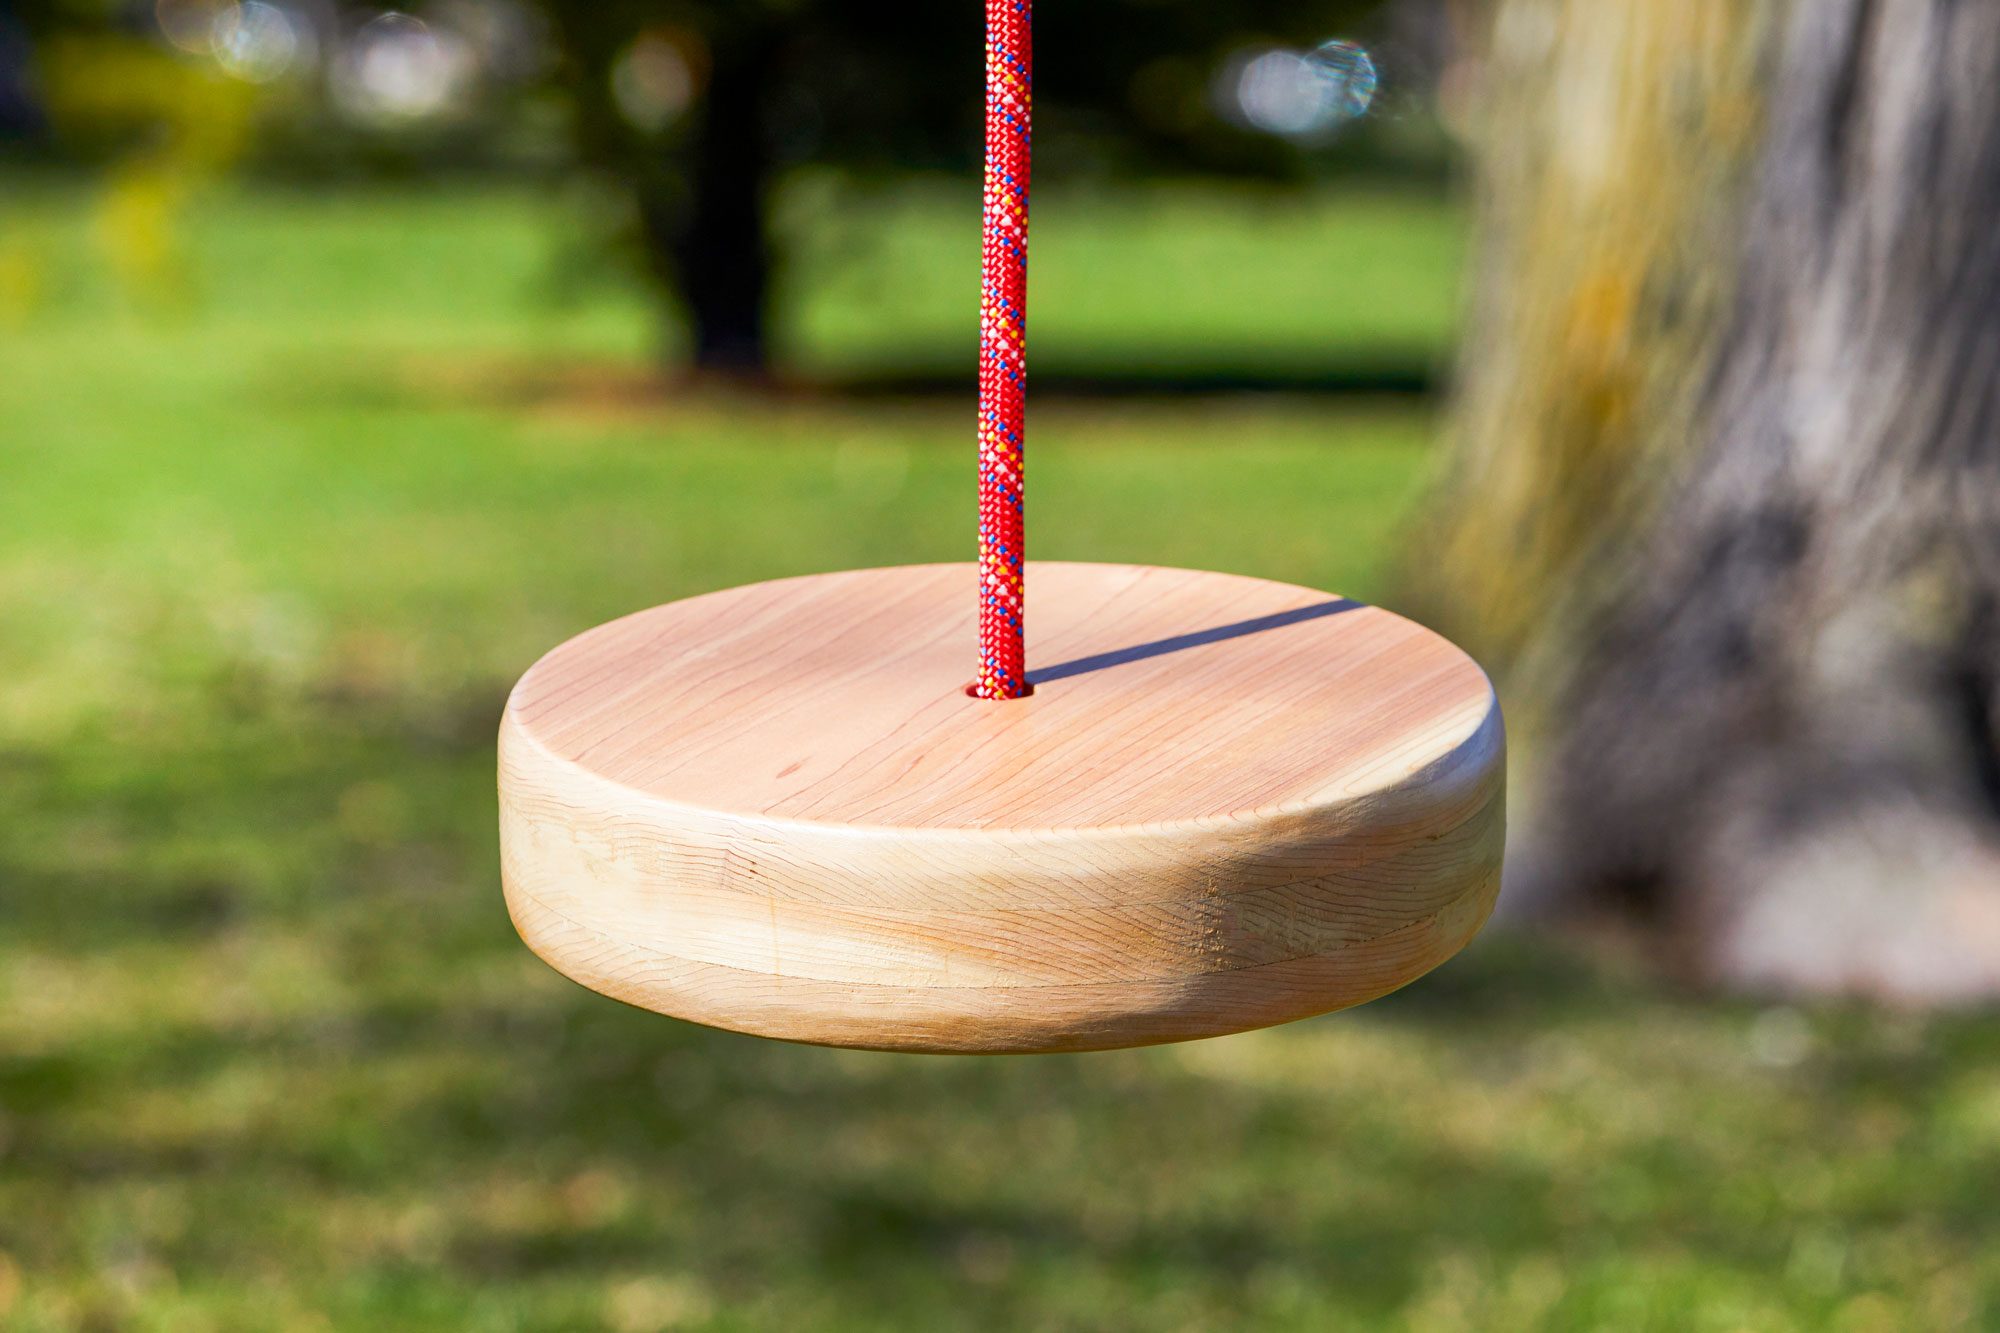 A Disc Swing